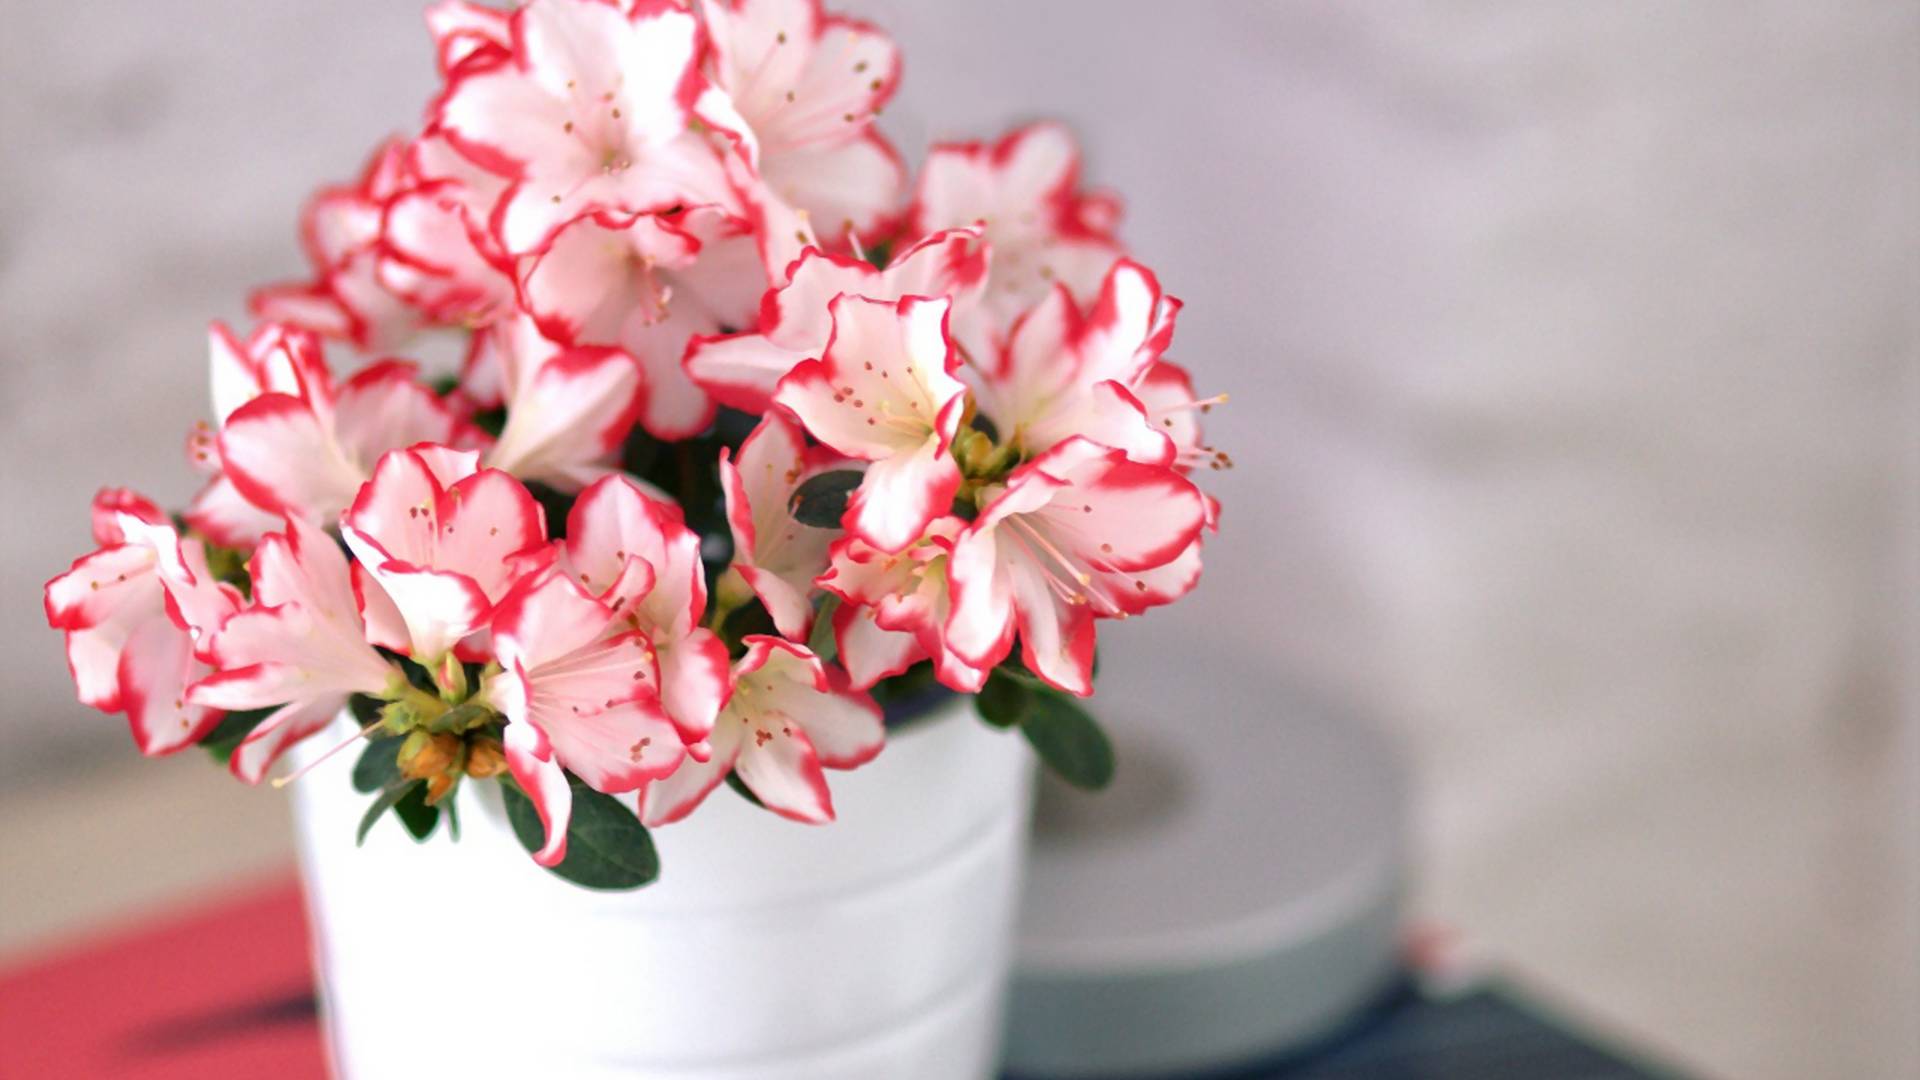 Azalia doniczkowa - wdzięczna roślina dla każdej wielbicielki ukwieconego mieszkania